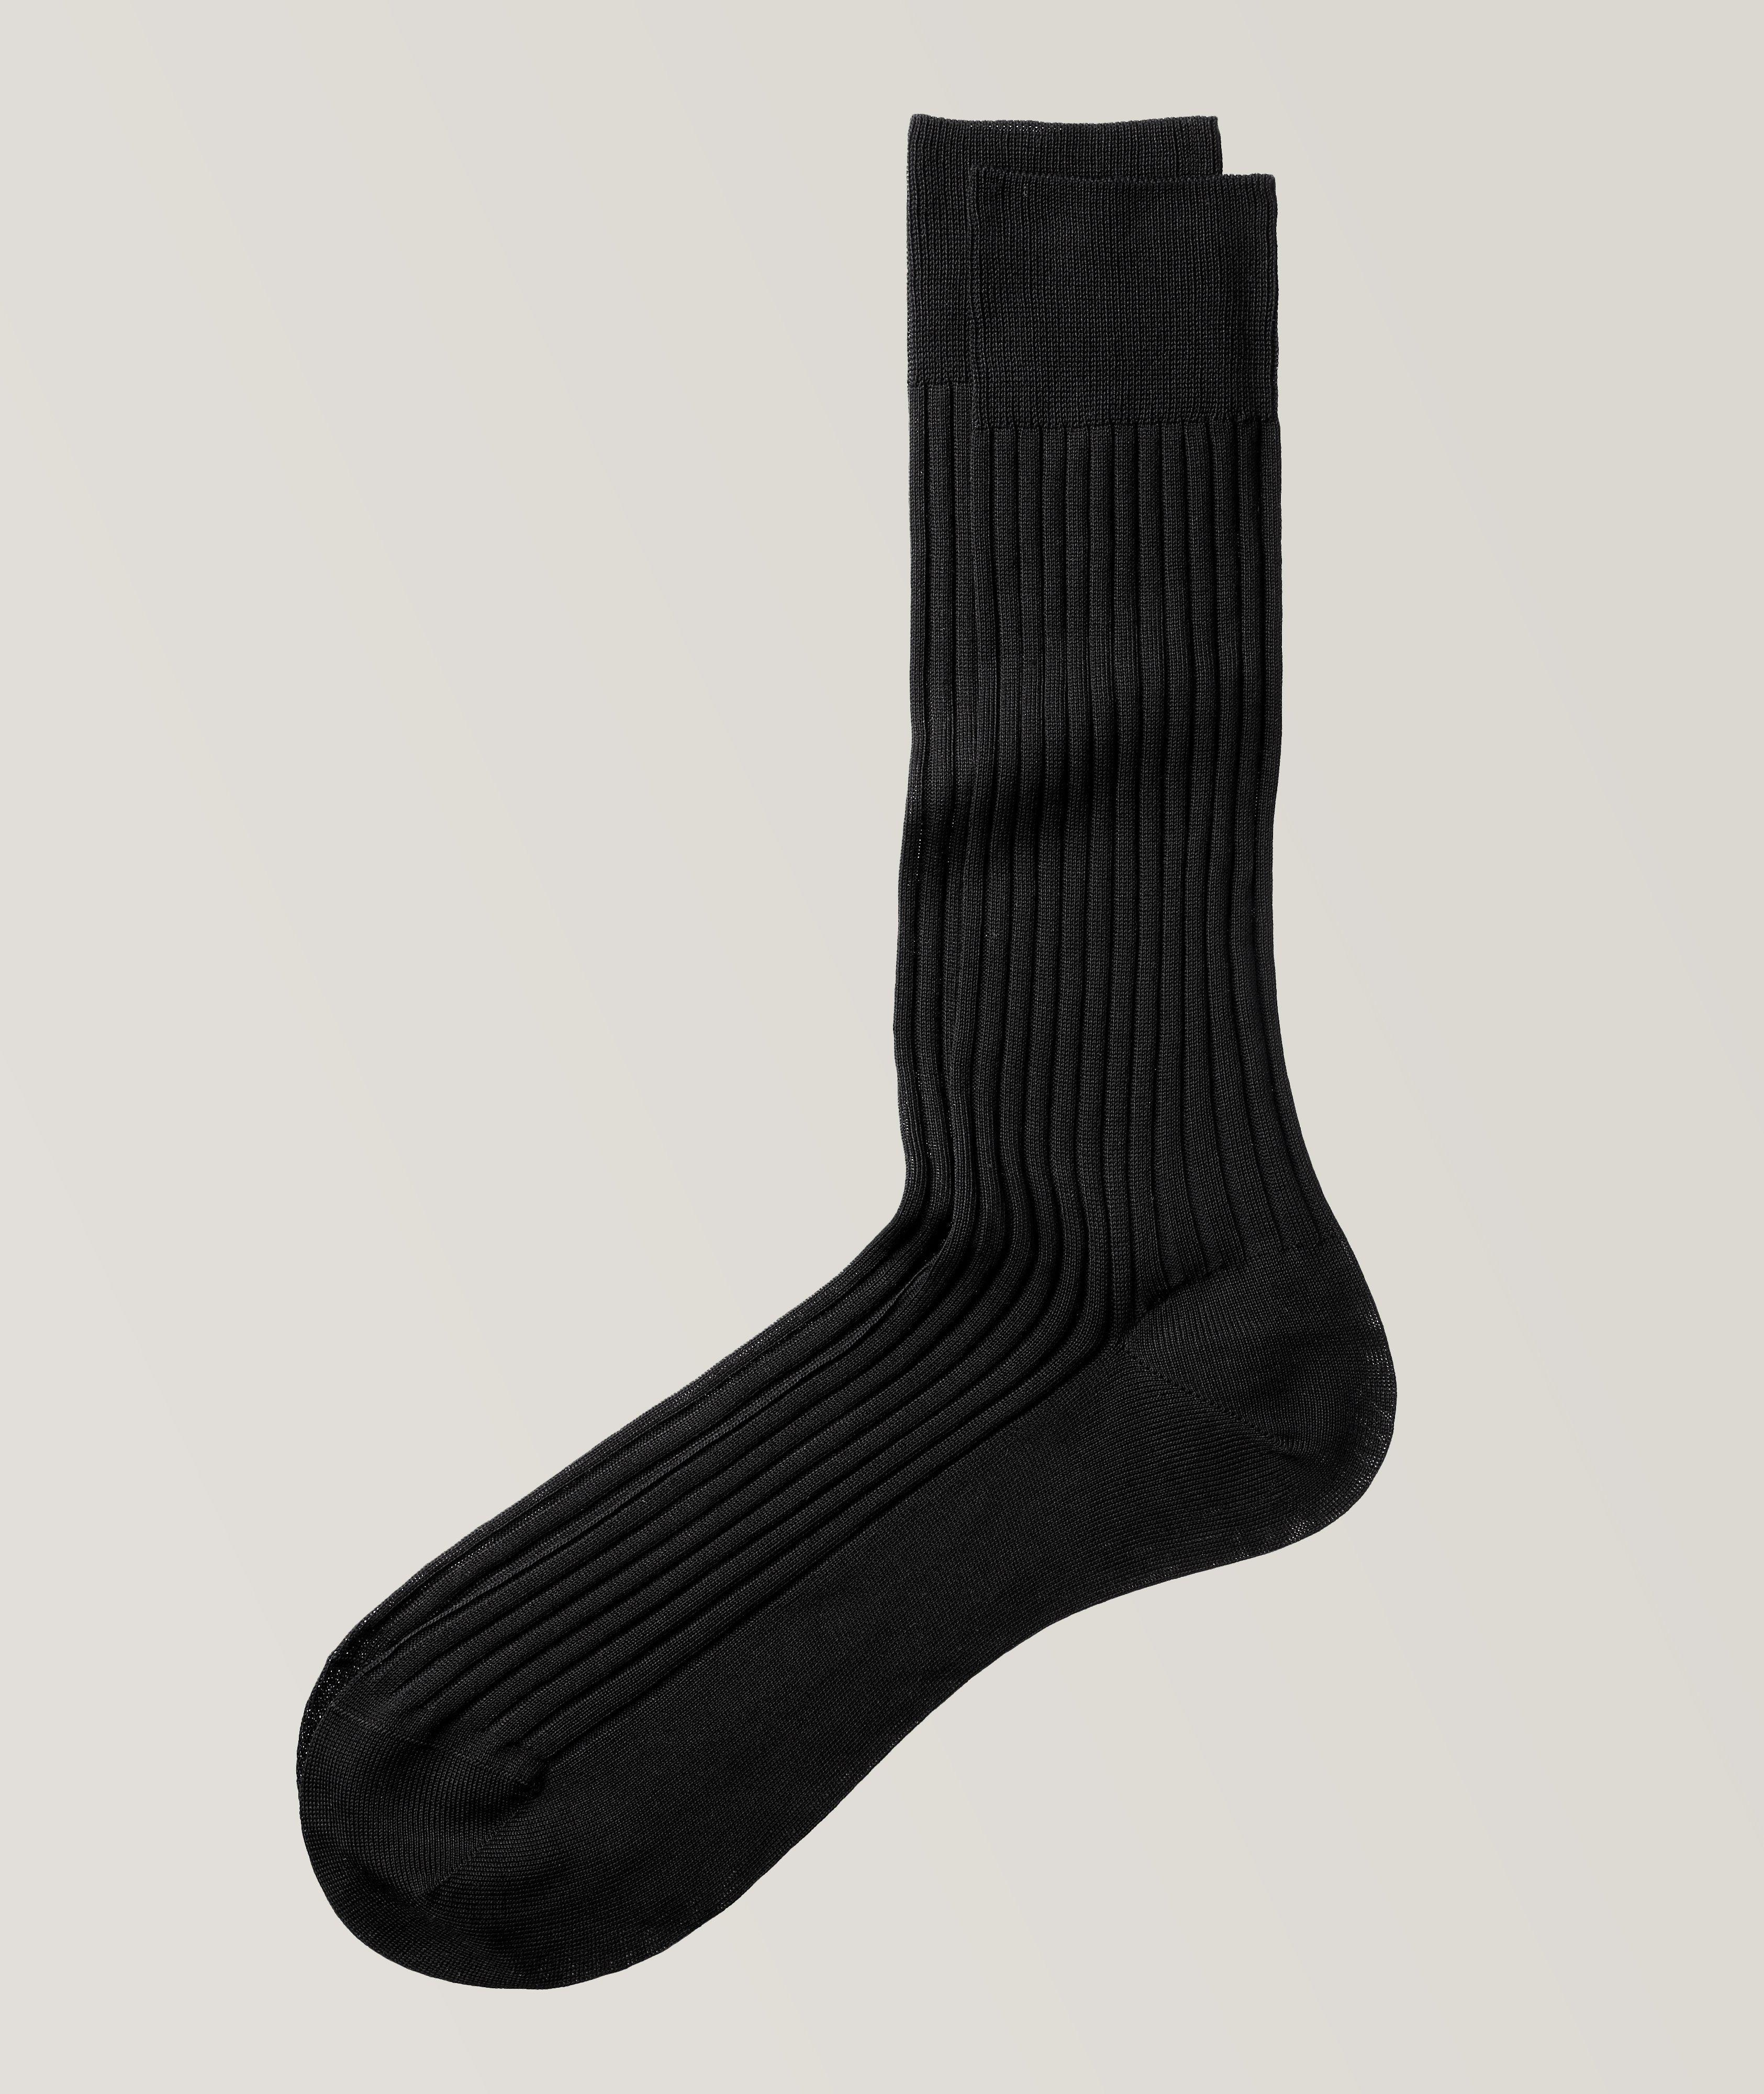 Danvers Ribbed Cotton-Blend Dress Socks image 0